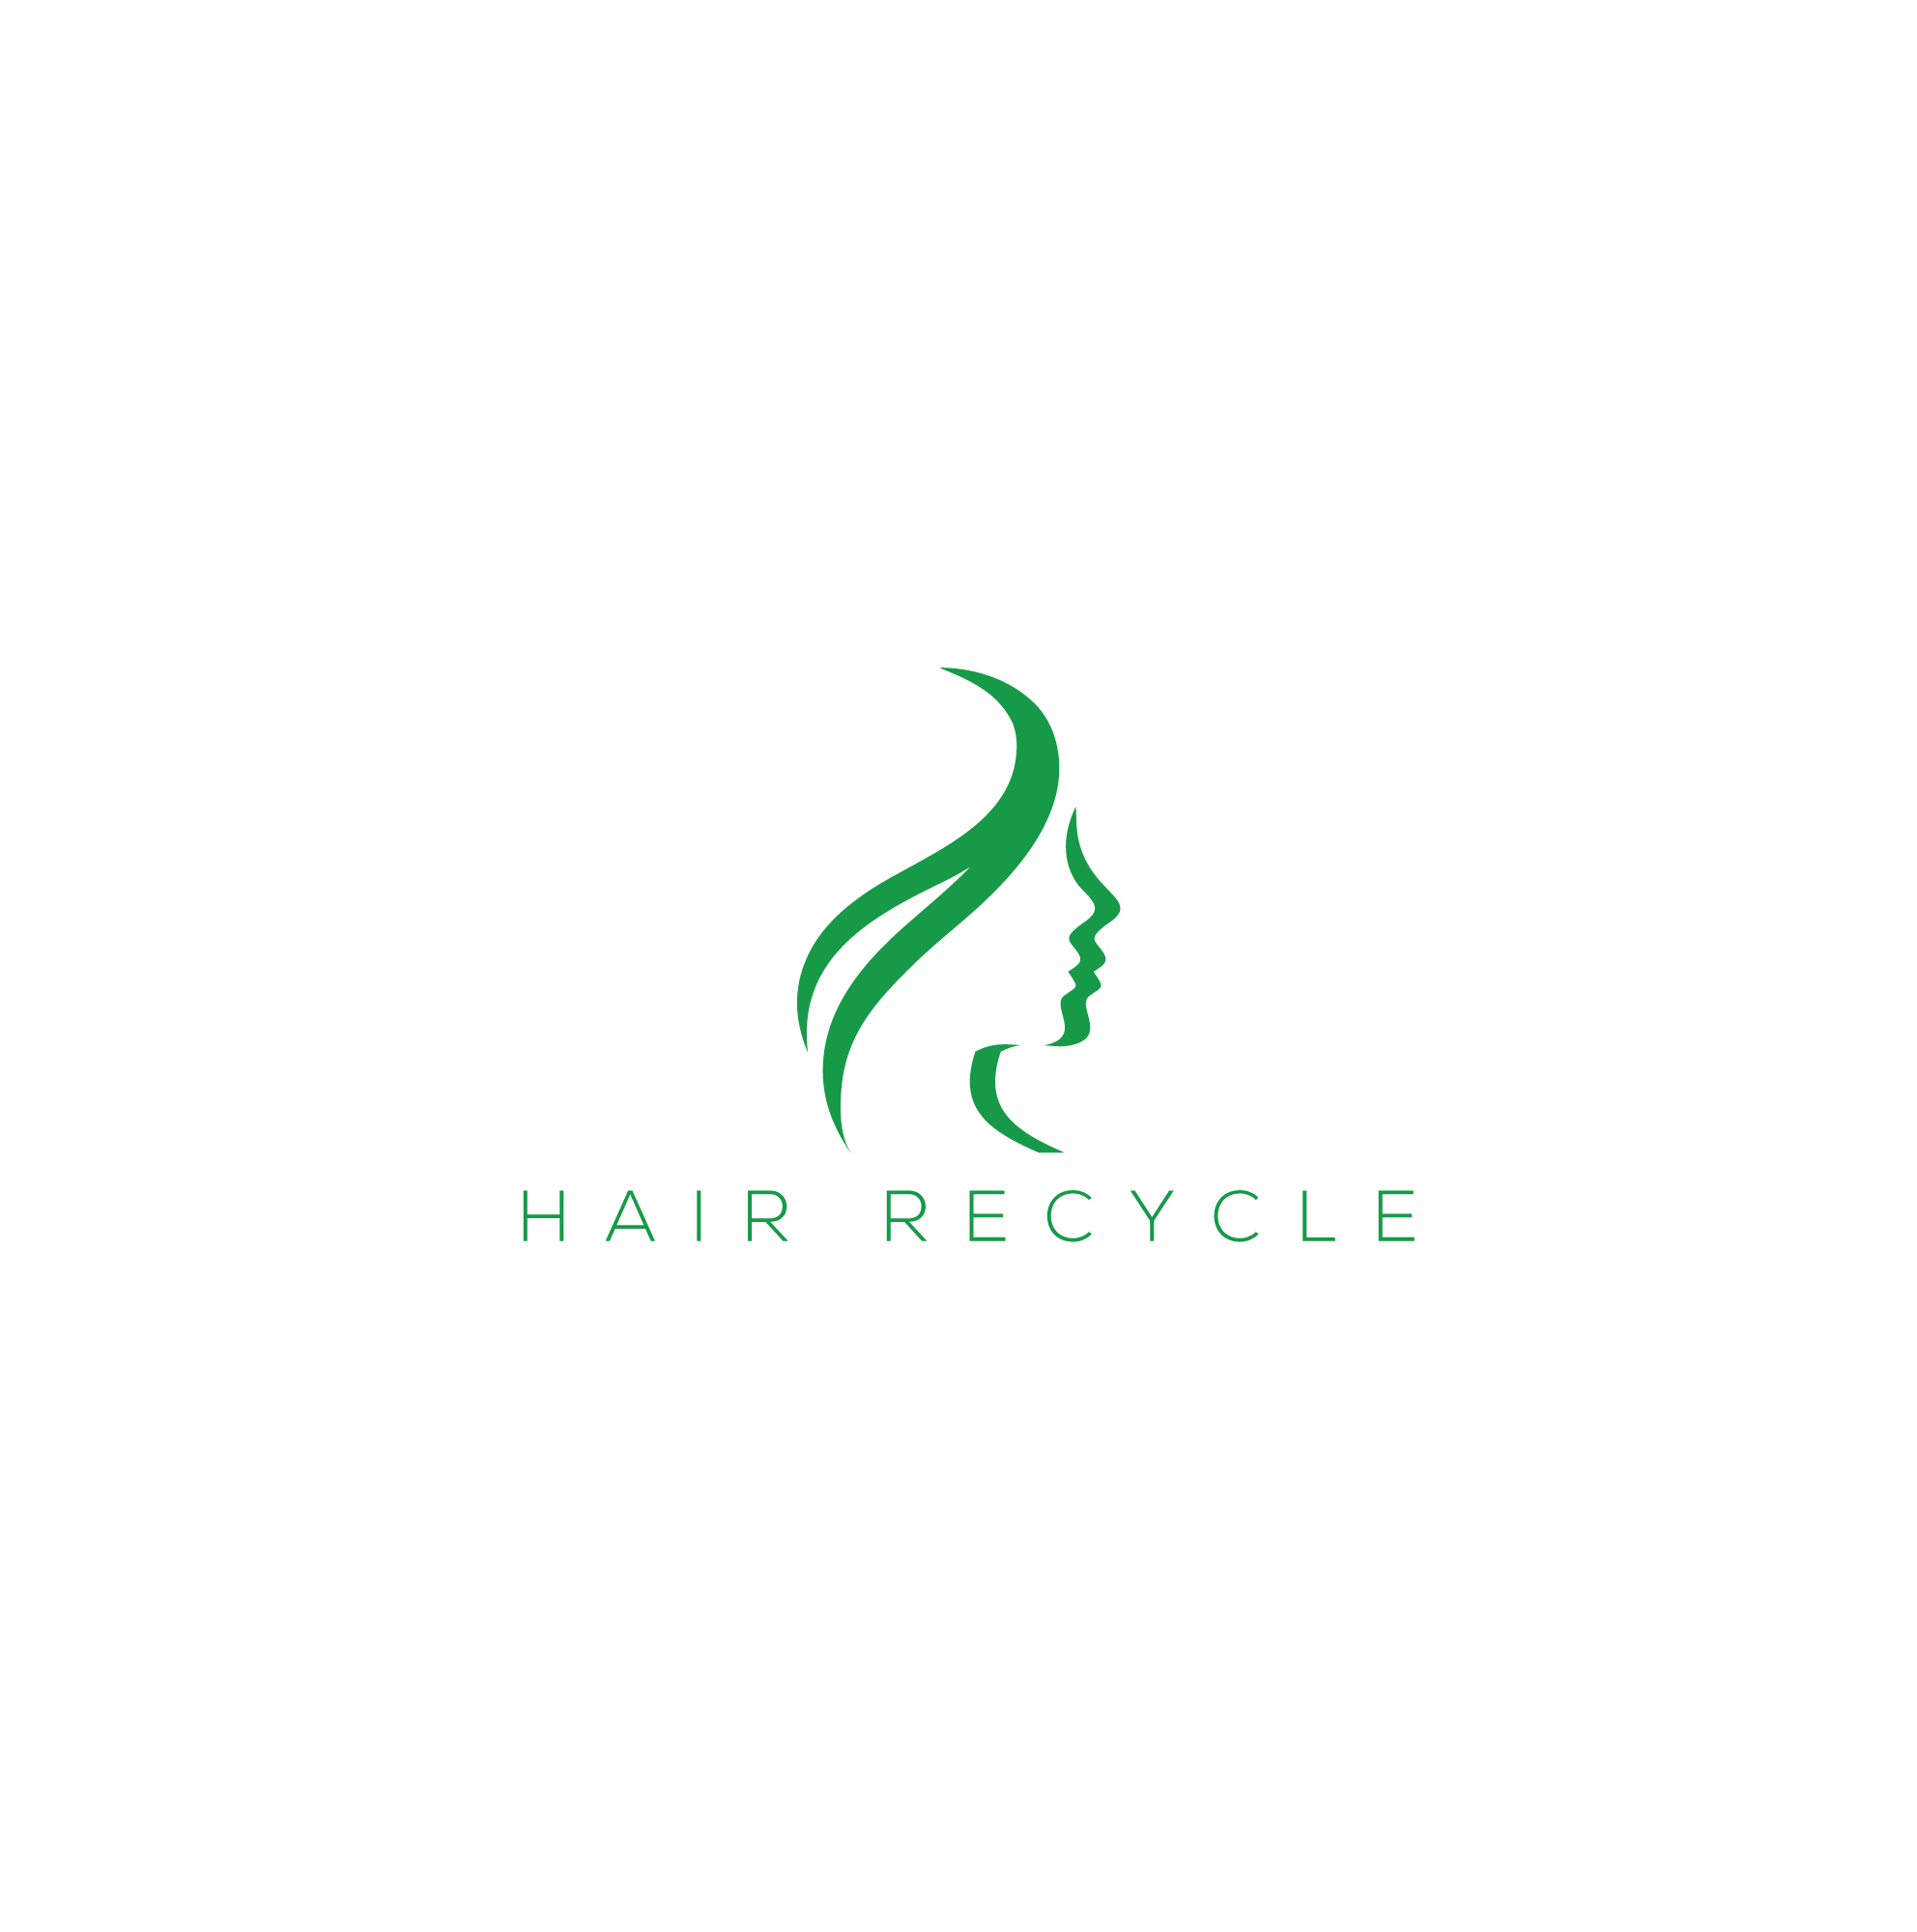 Devenez chauffeur logisticien (bénévole) chez Hair Recycle !